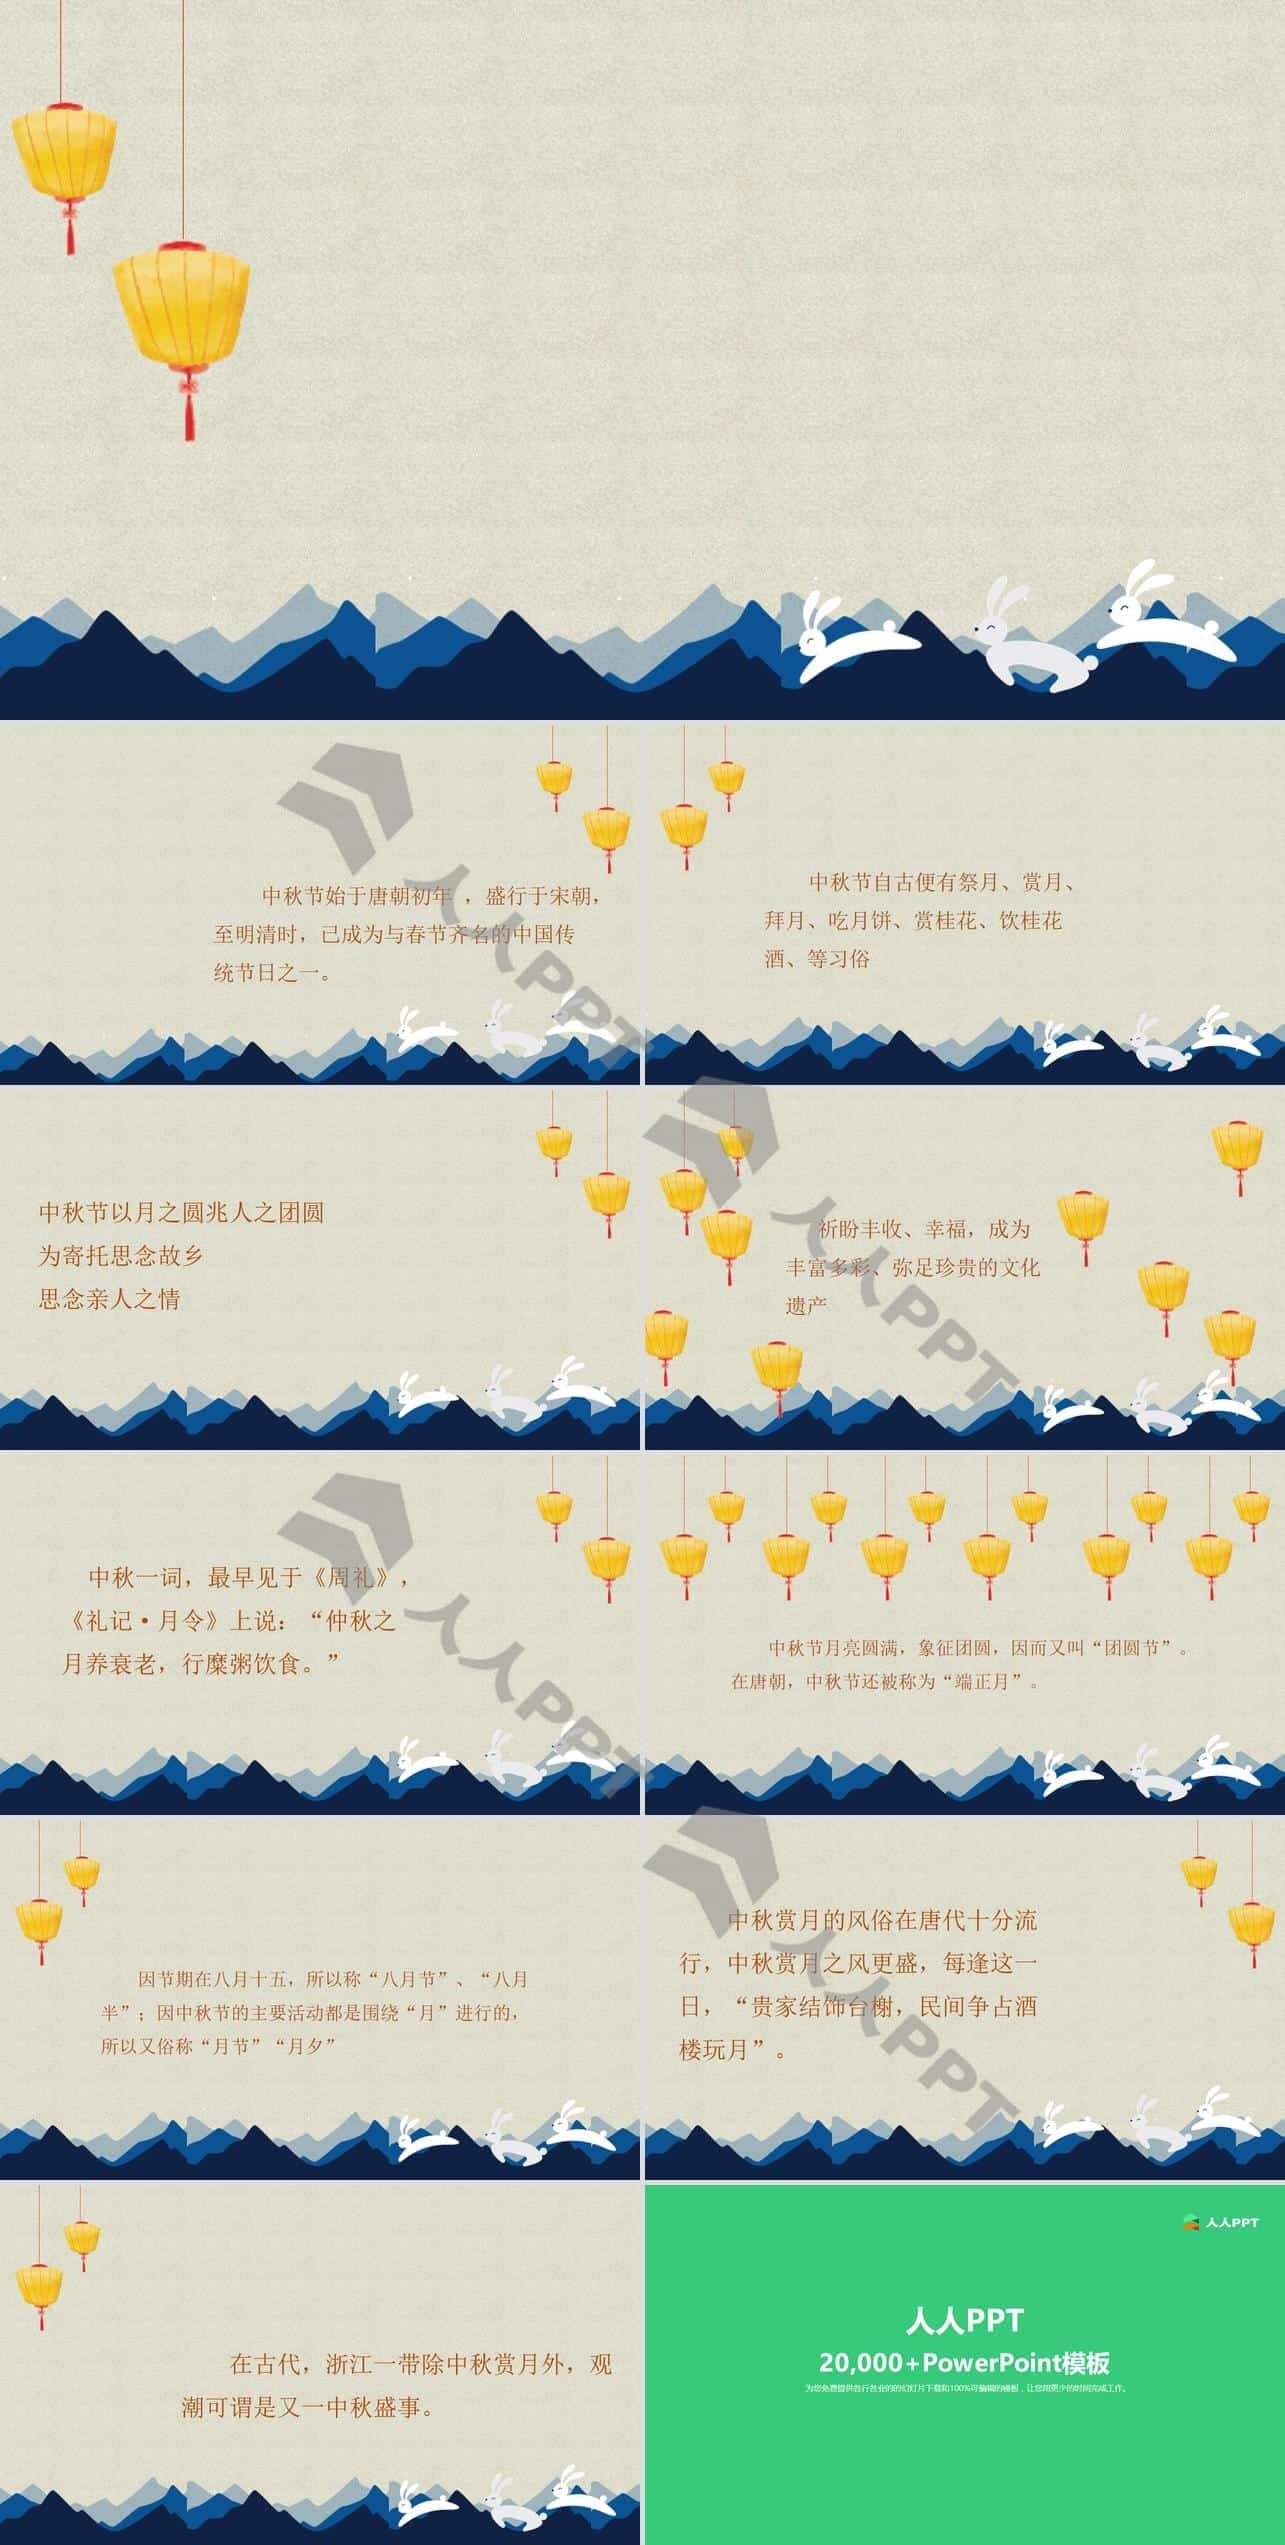 嫦娥奔月――中秋佳节动态祝福贺卡PPT模板长图